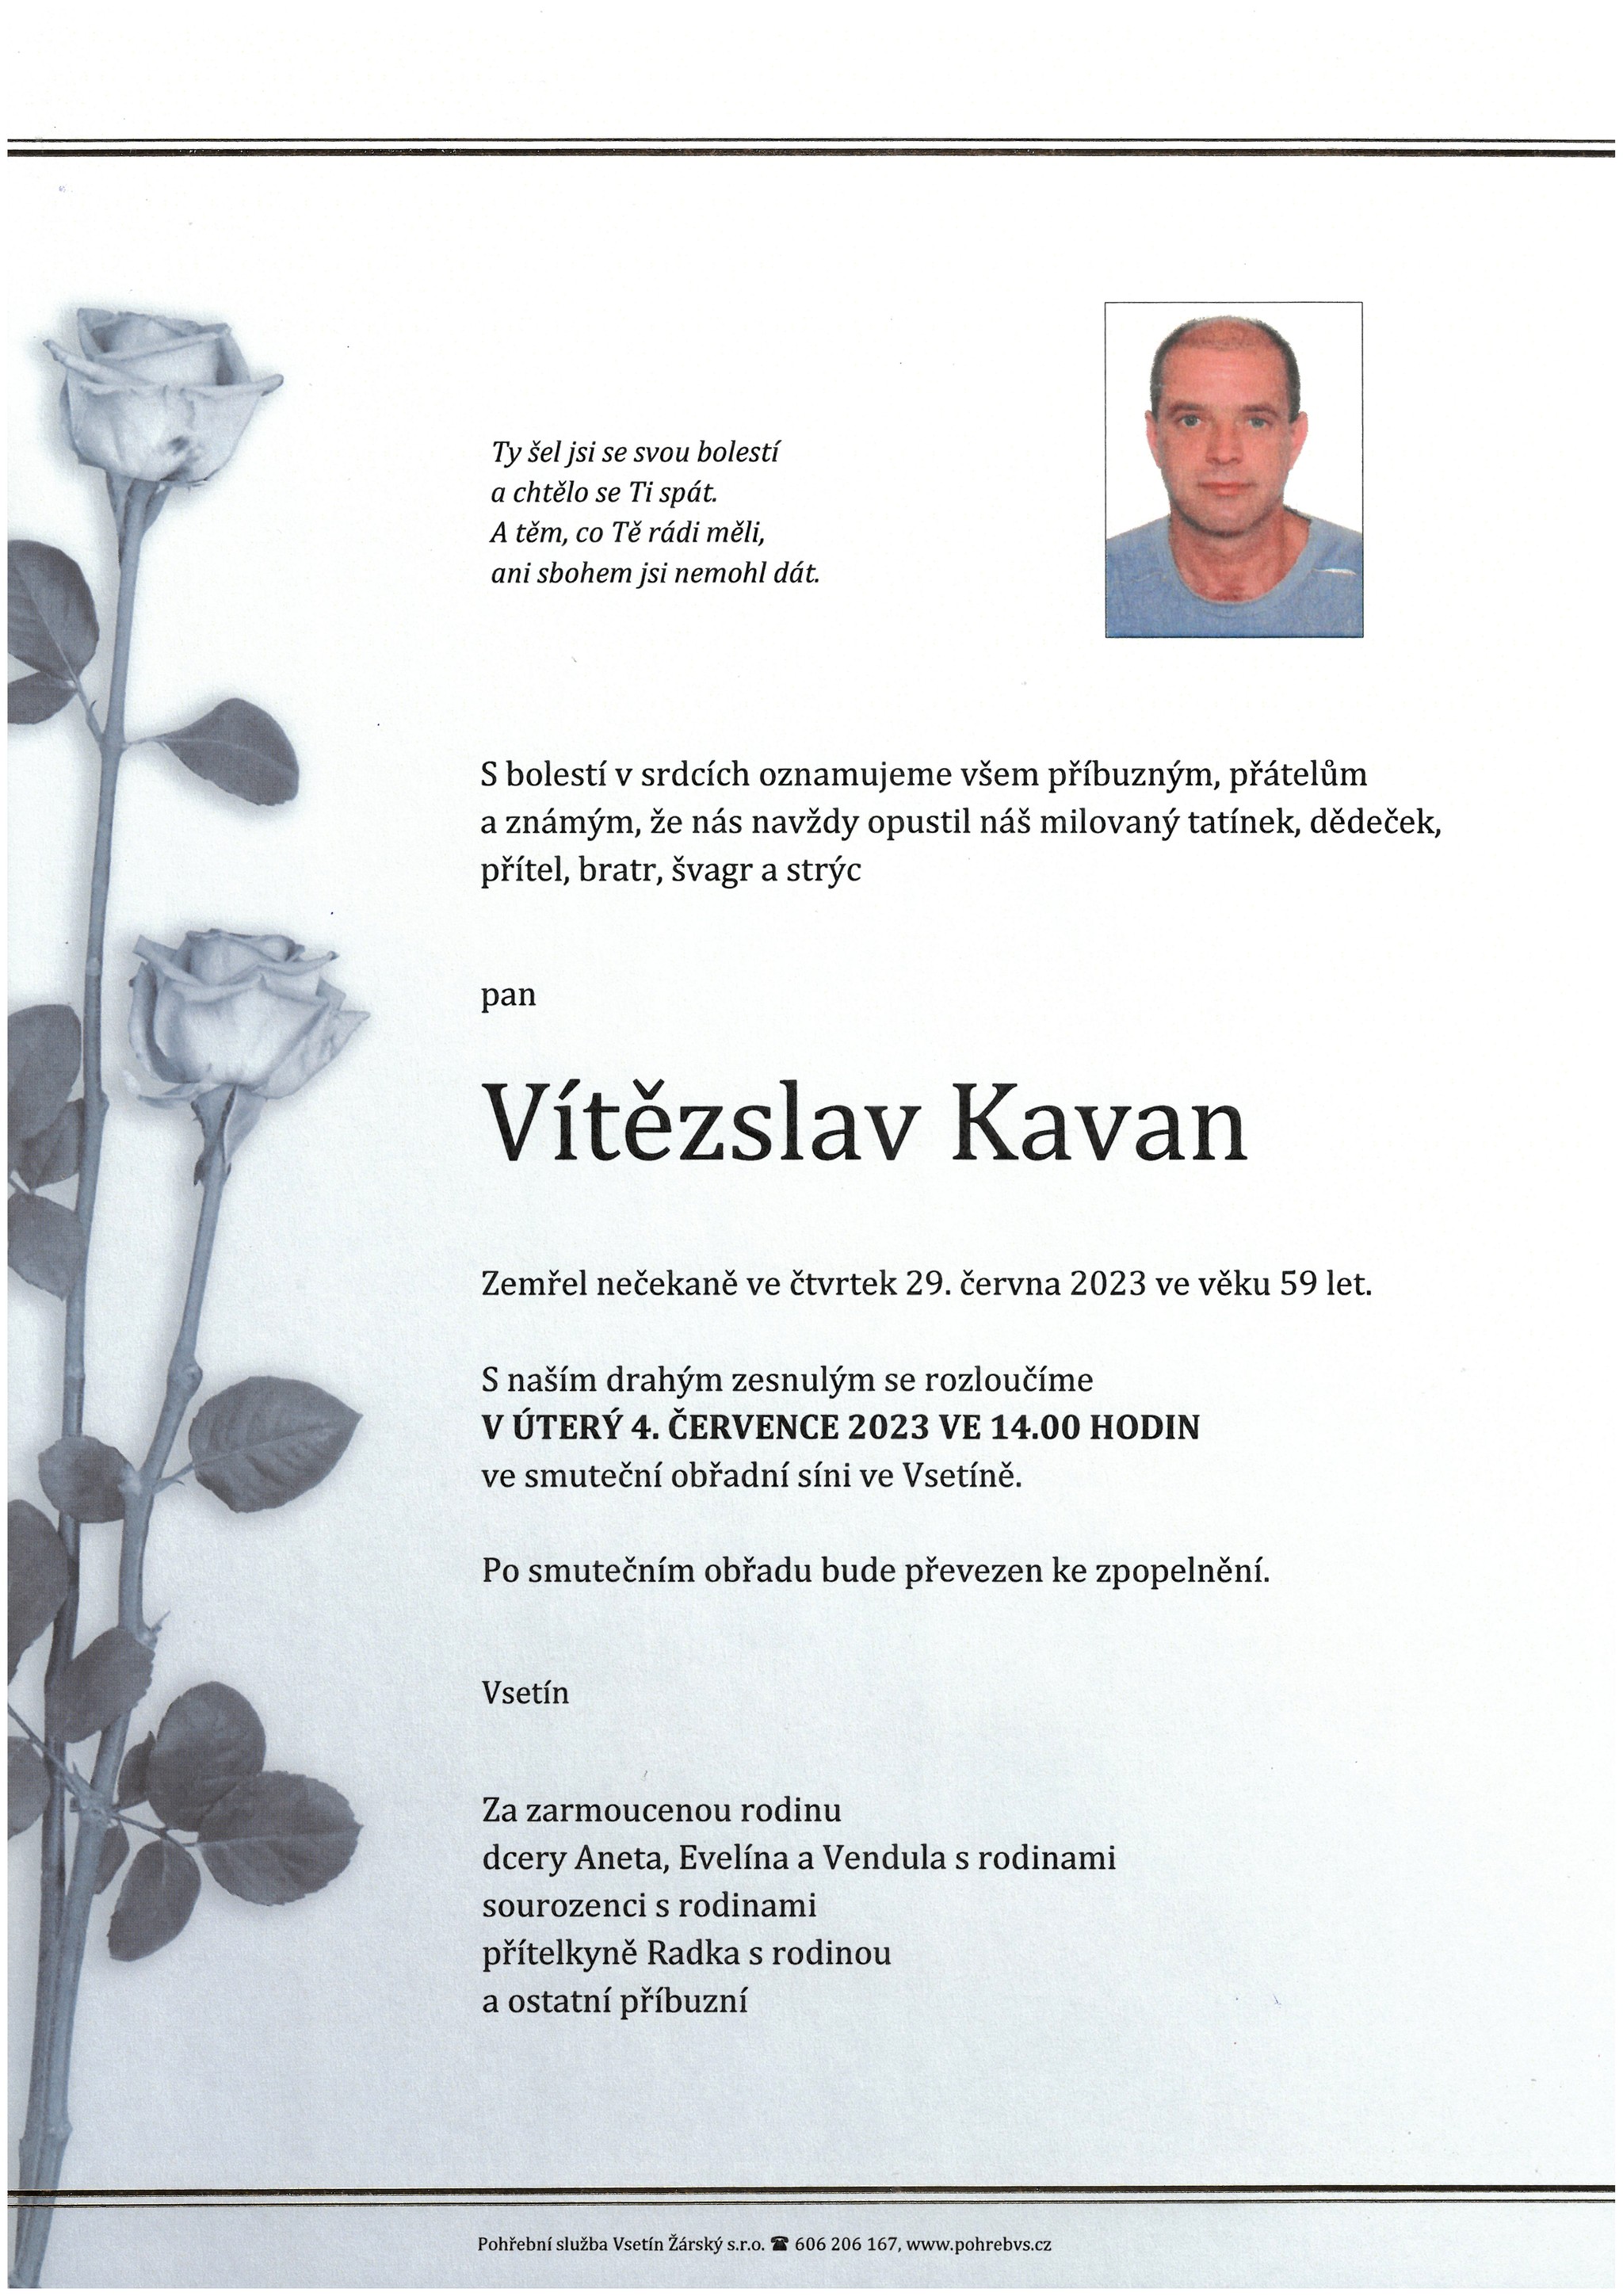 Vítězslav Kavan